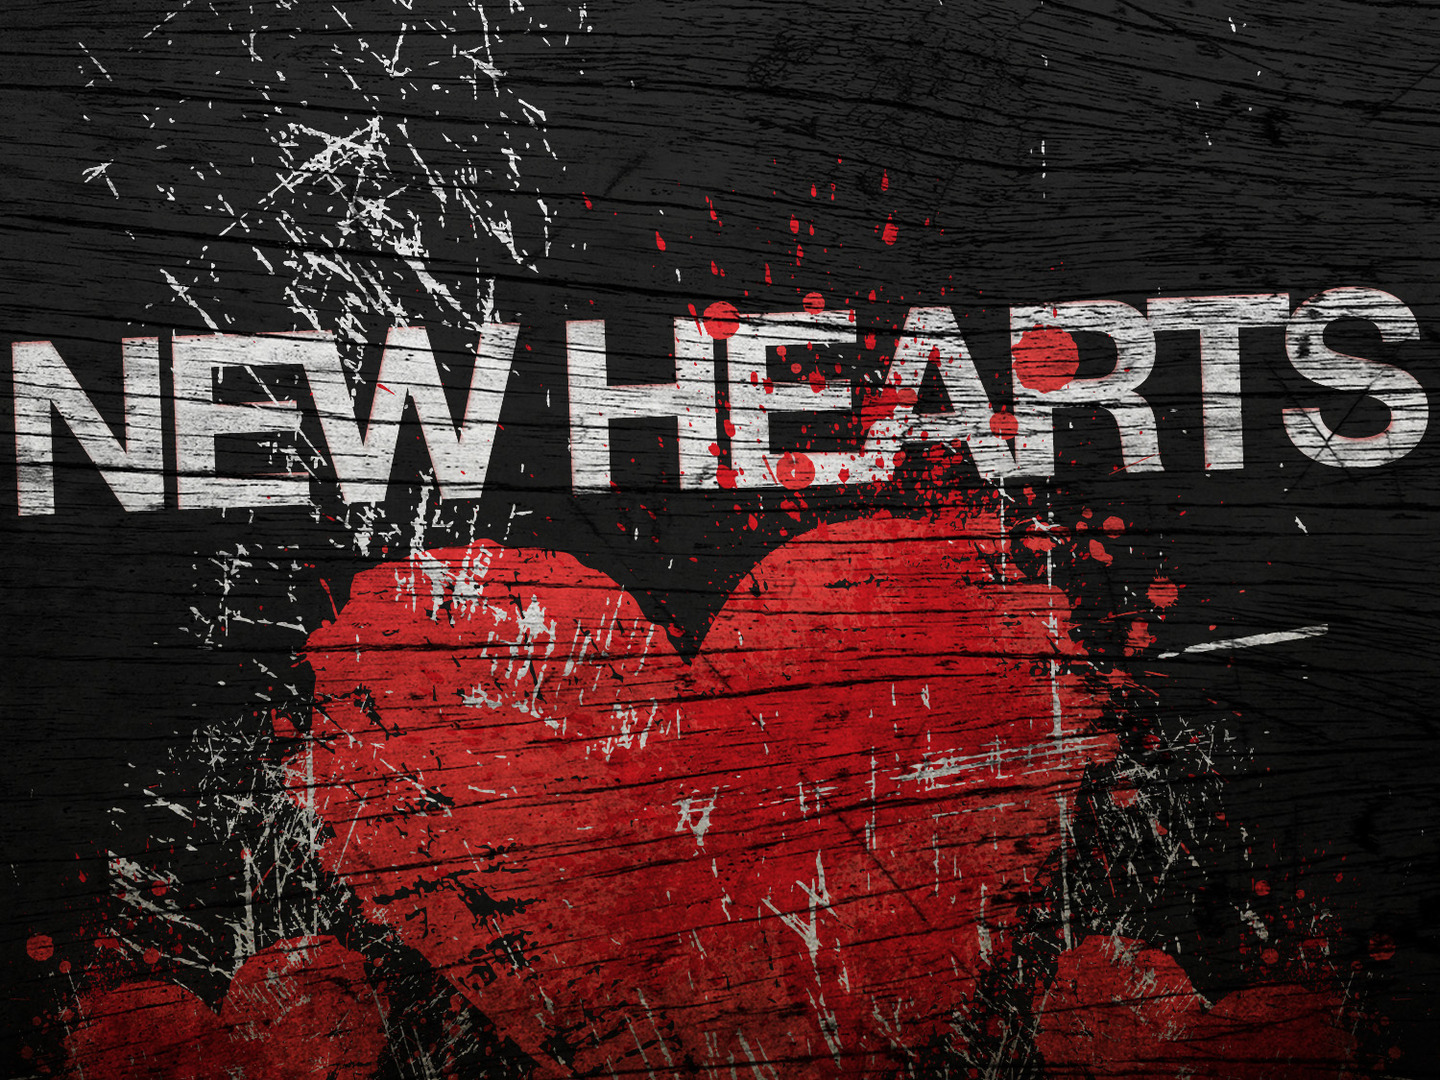 new_hearts-title-2-still-4x3